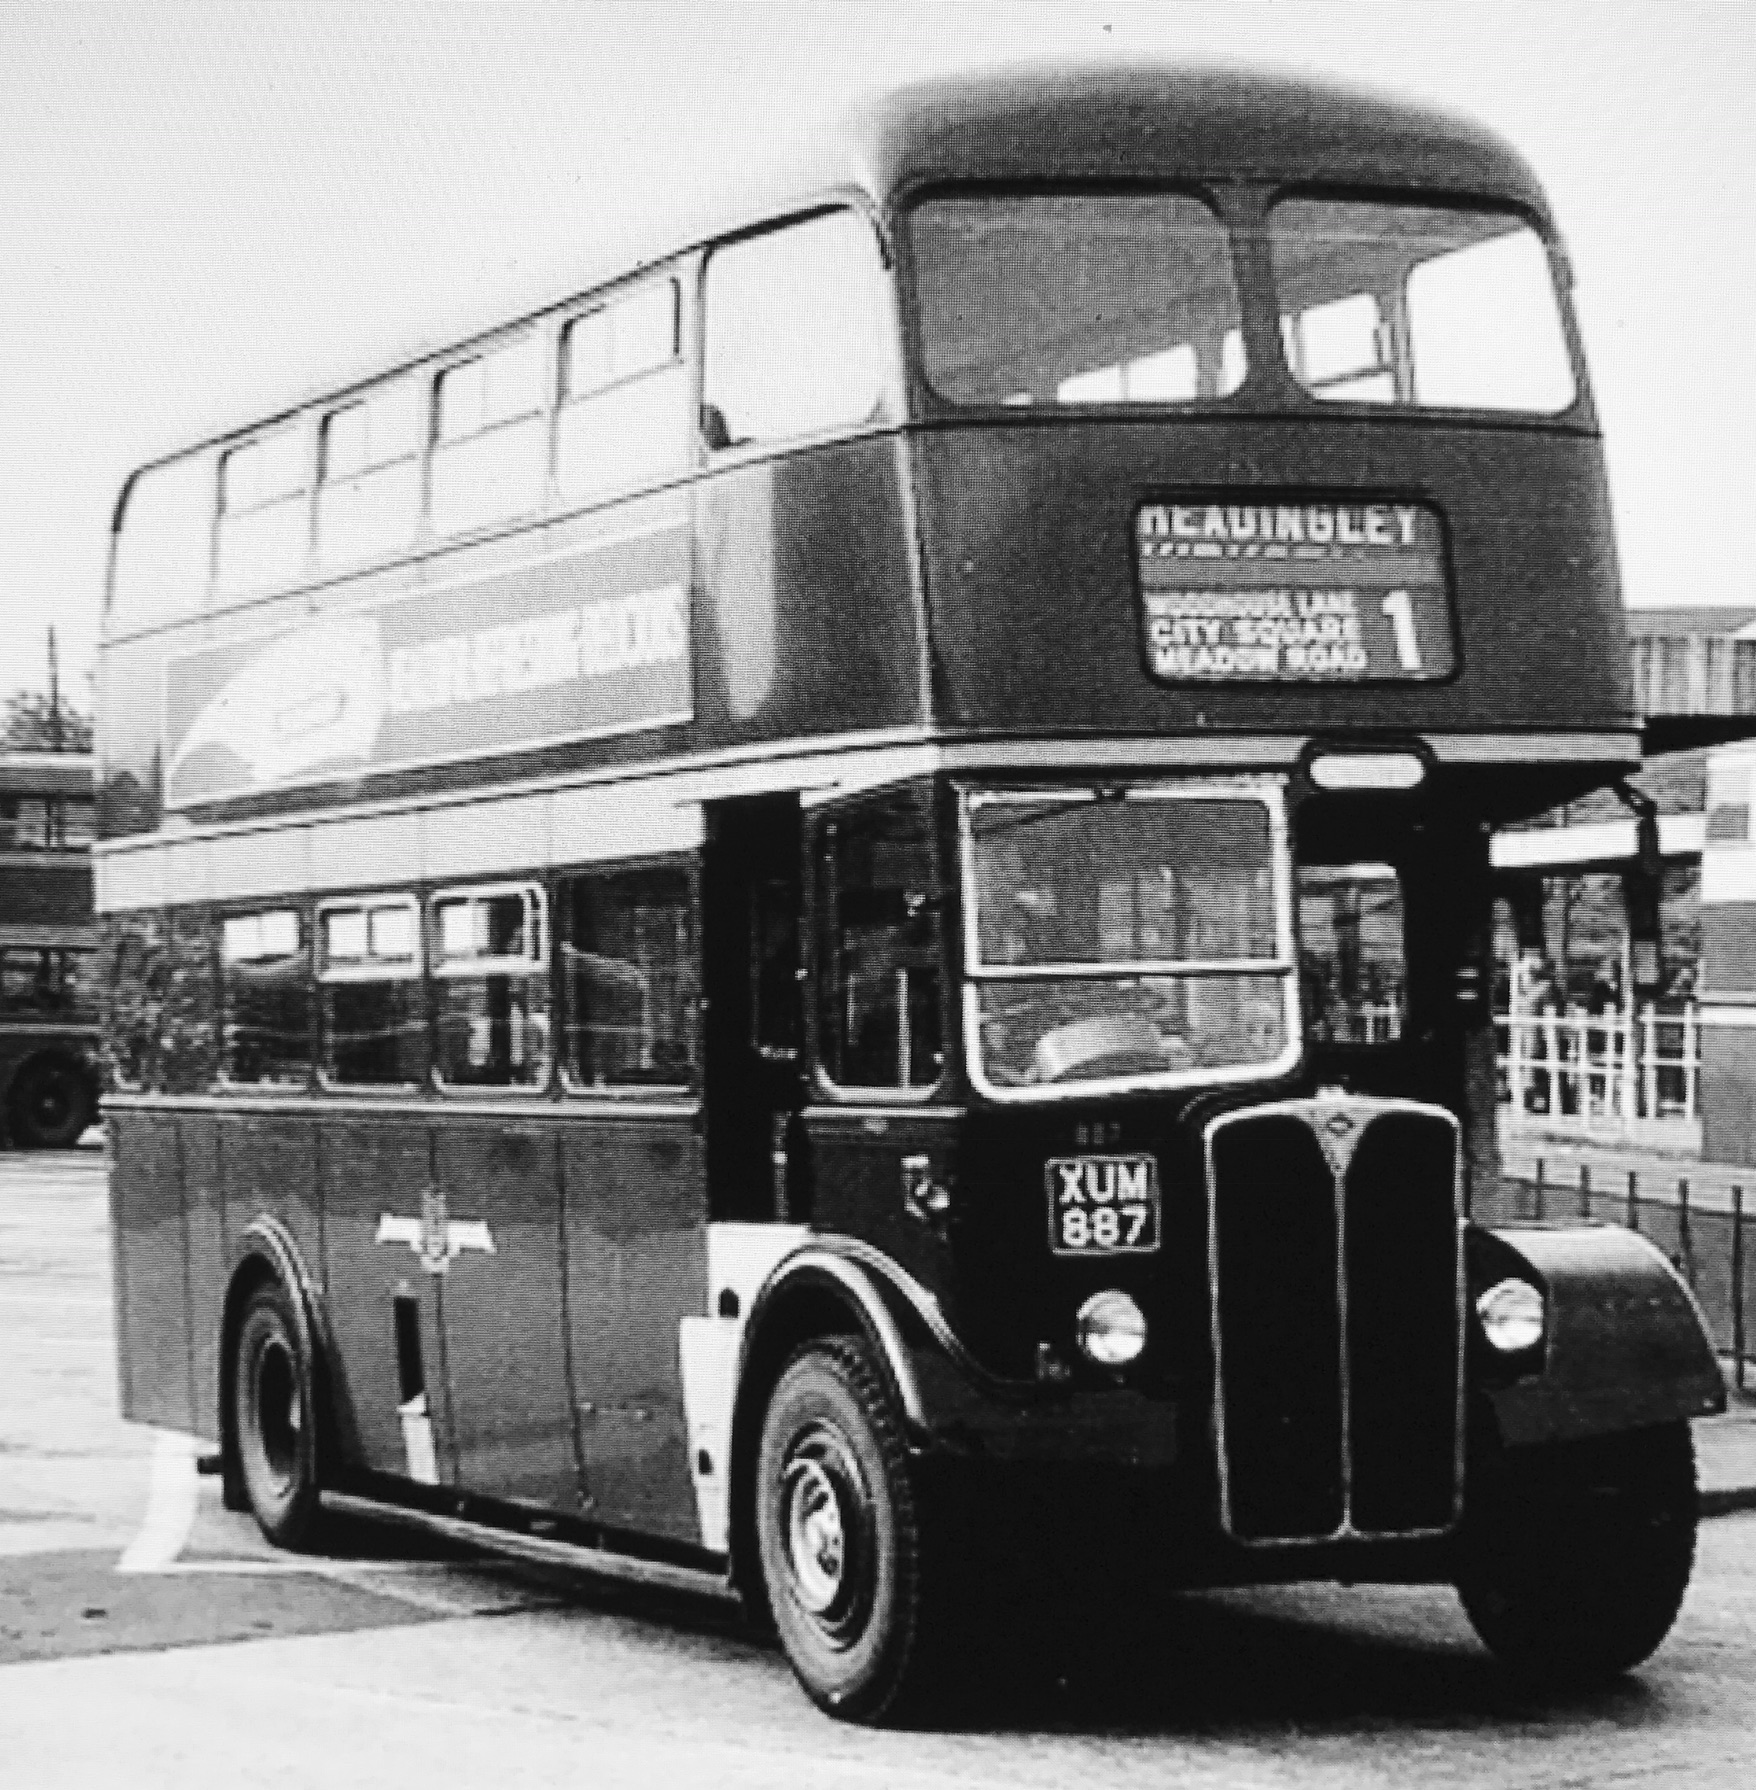 Bus, circa 1960